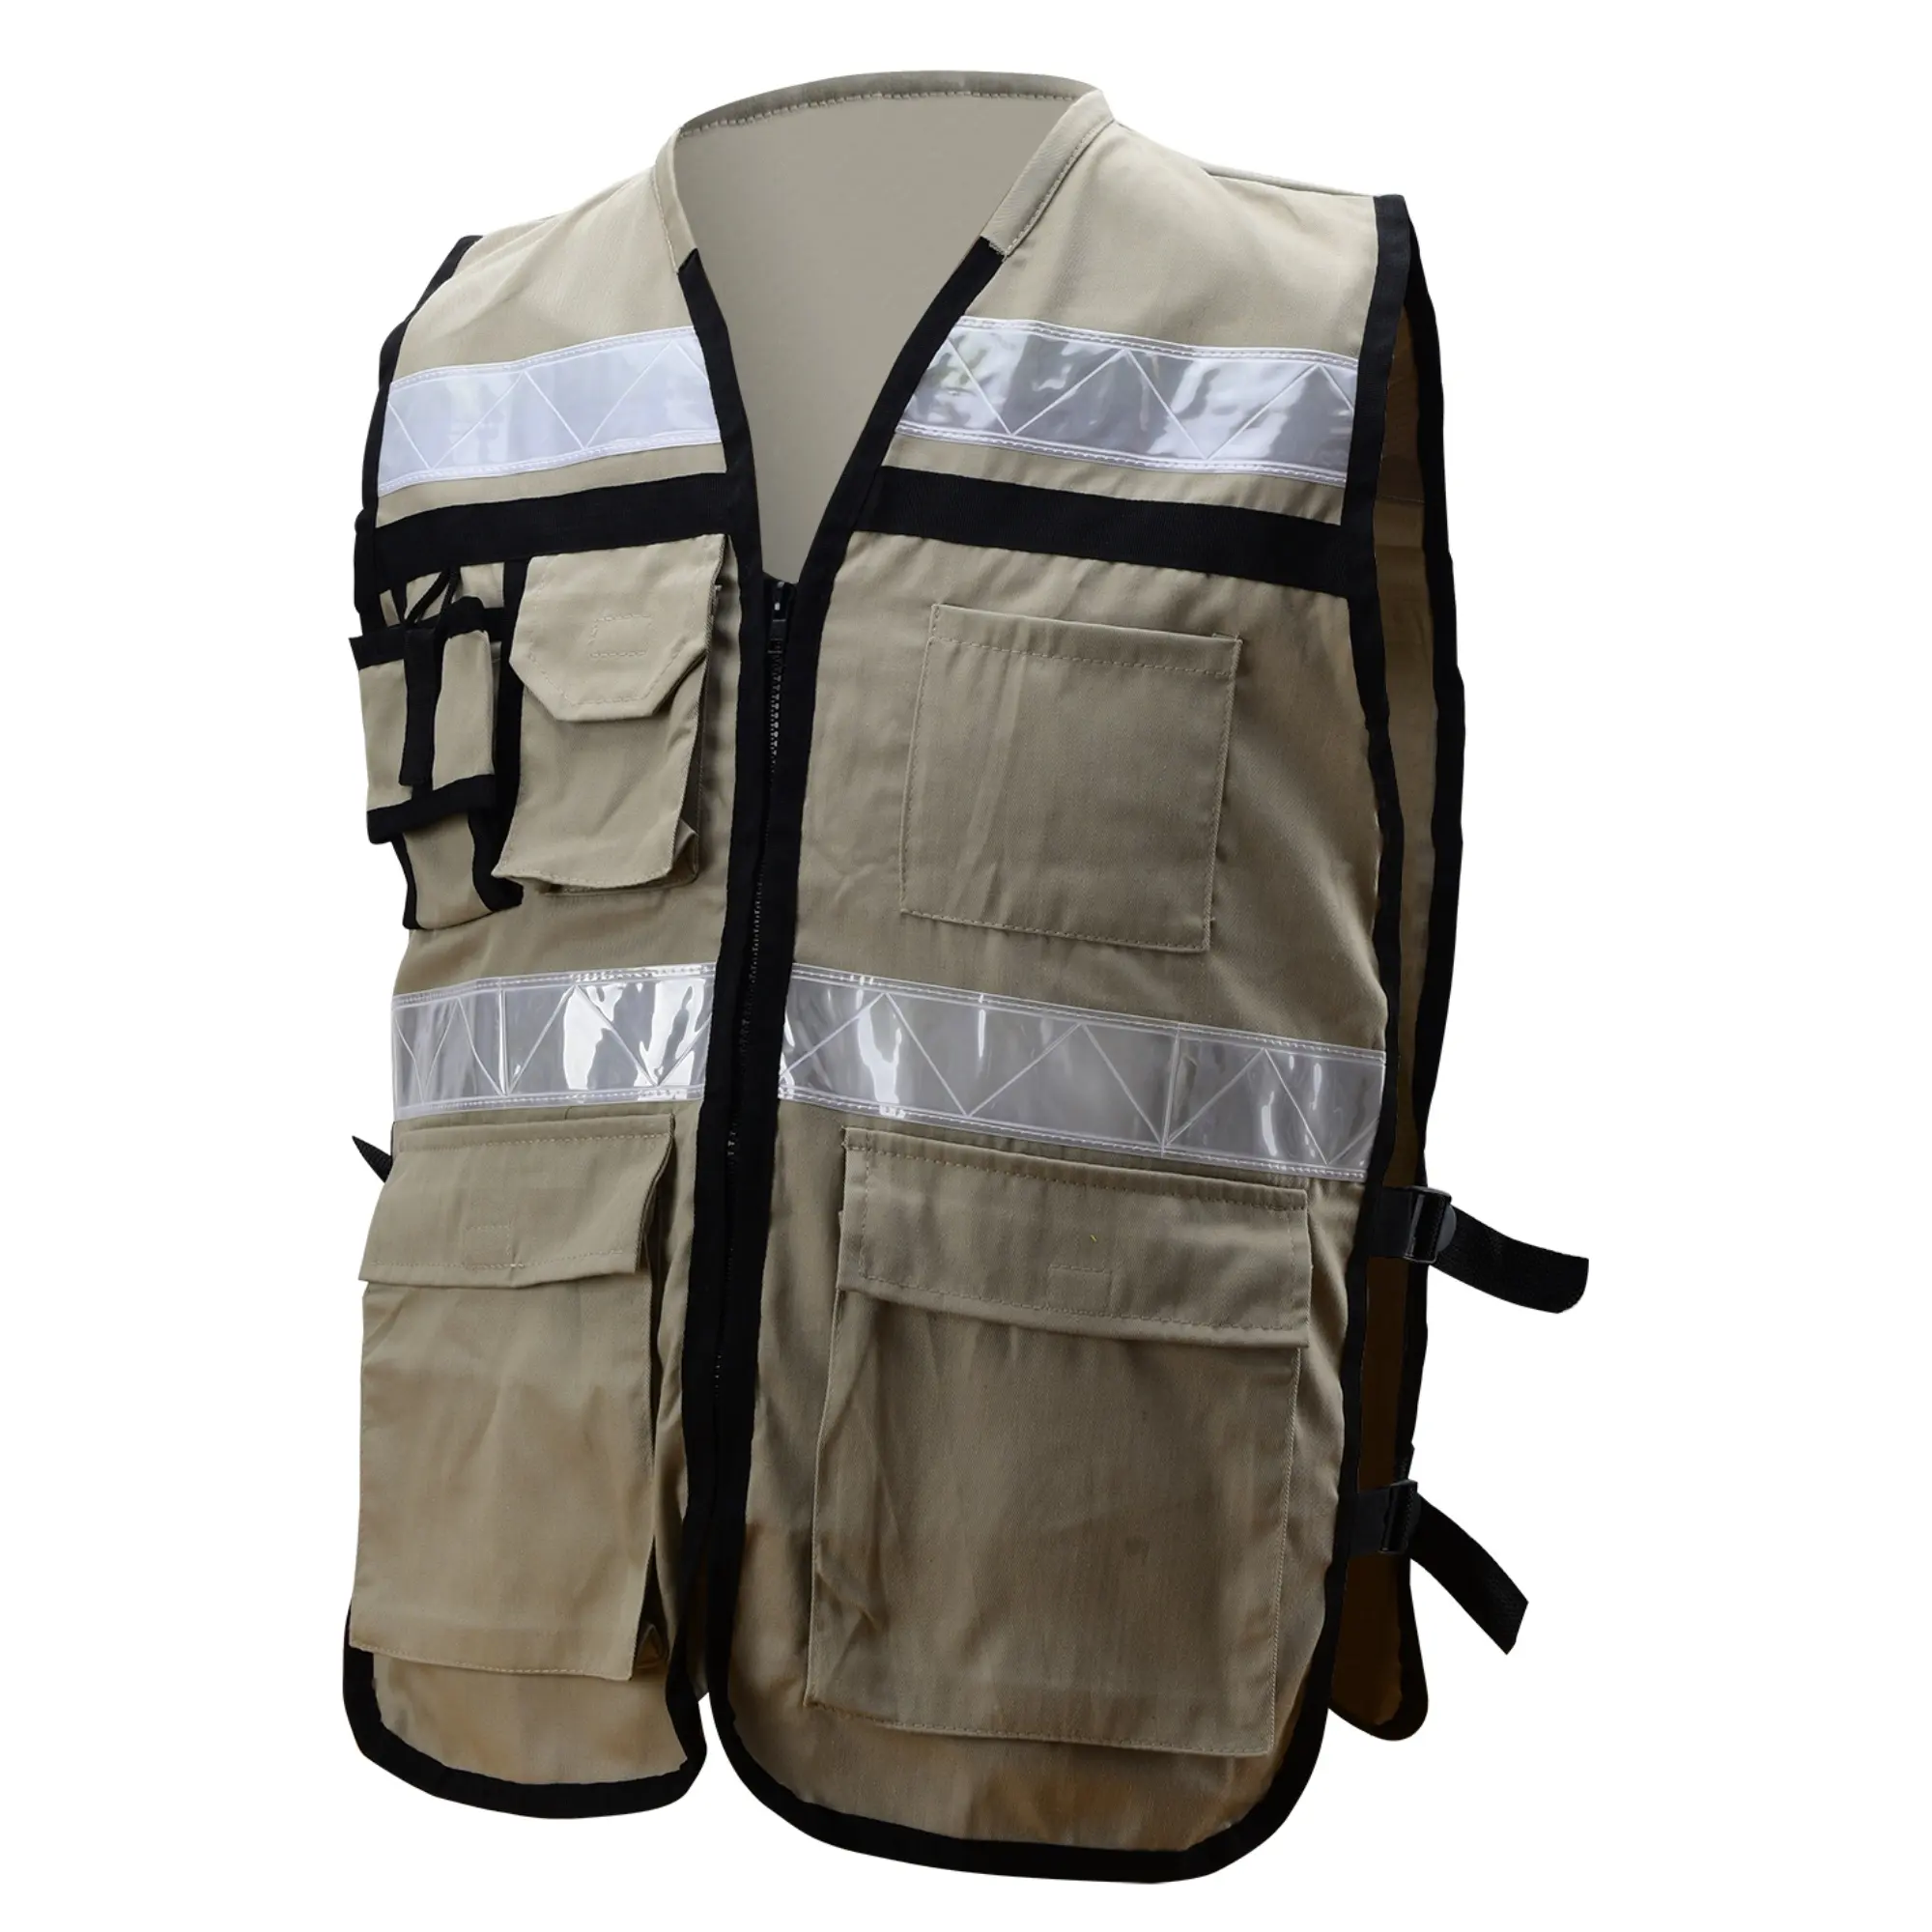 Colete de segurança ajustável para pesca/caminhadas/caminhada de algodão, roupa de trabalho com vários bolsos, chaleco seguro ajustável e respirável de alta visibilidade